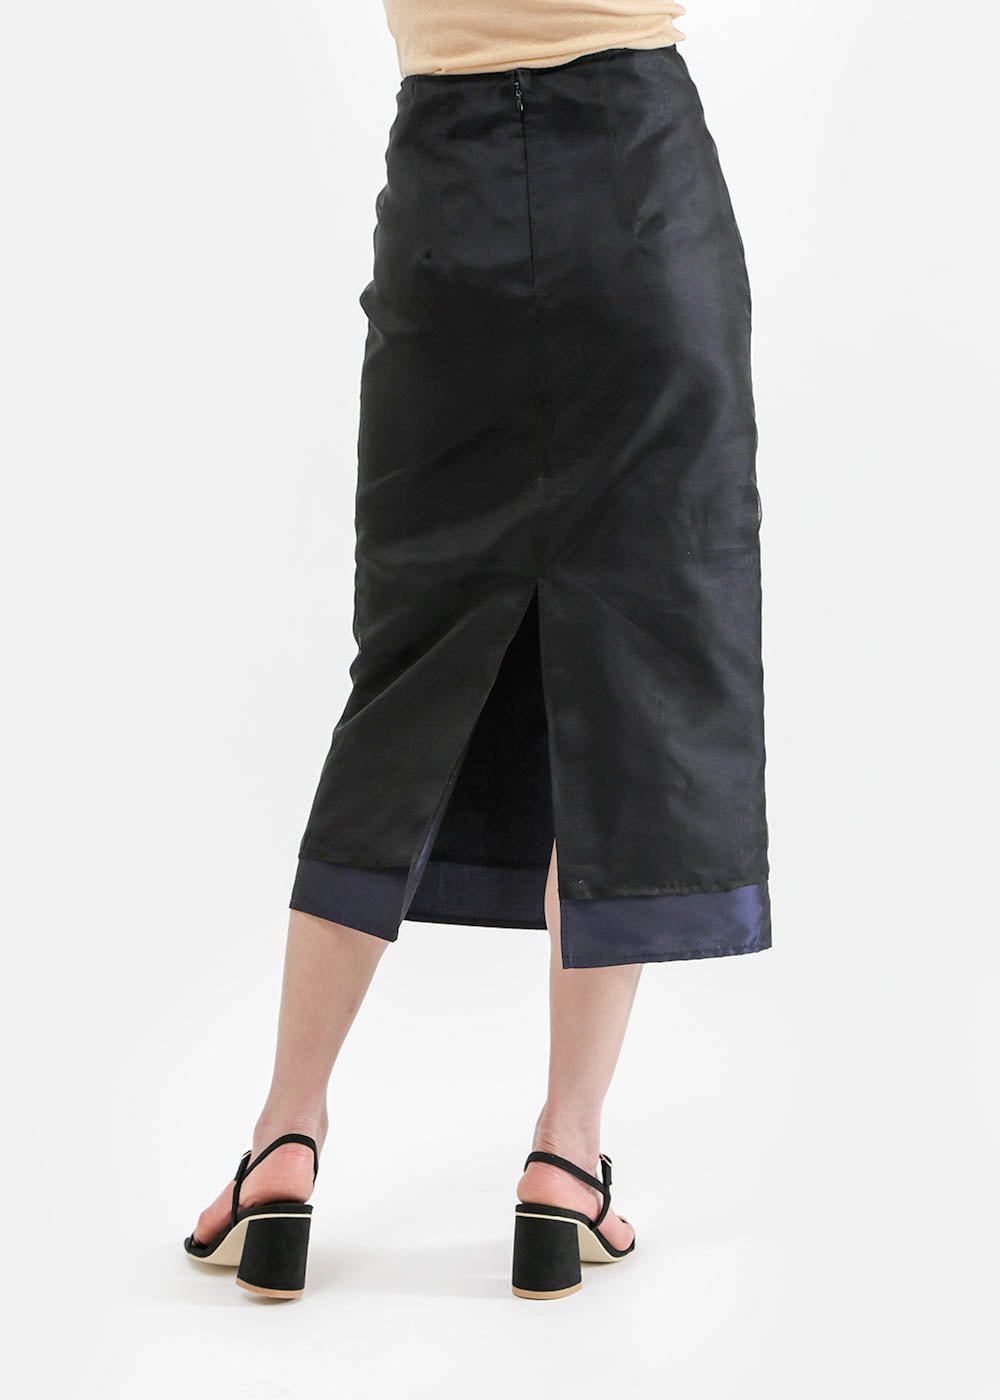 Adrift Denim A-Line Skirt in Mid Wash - Cotton Stretch, Midi Length Skirt –  Adrift Clothing